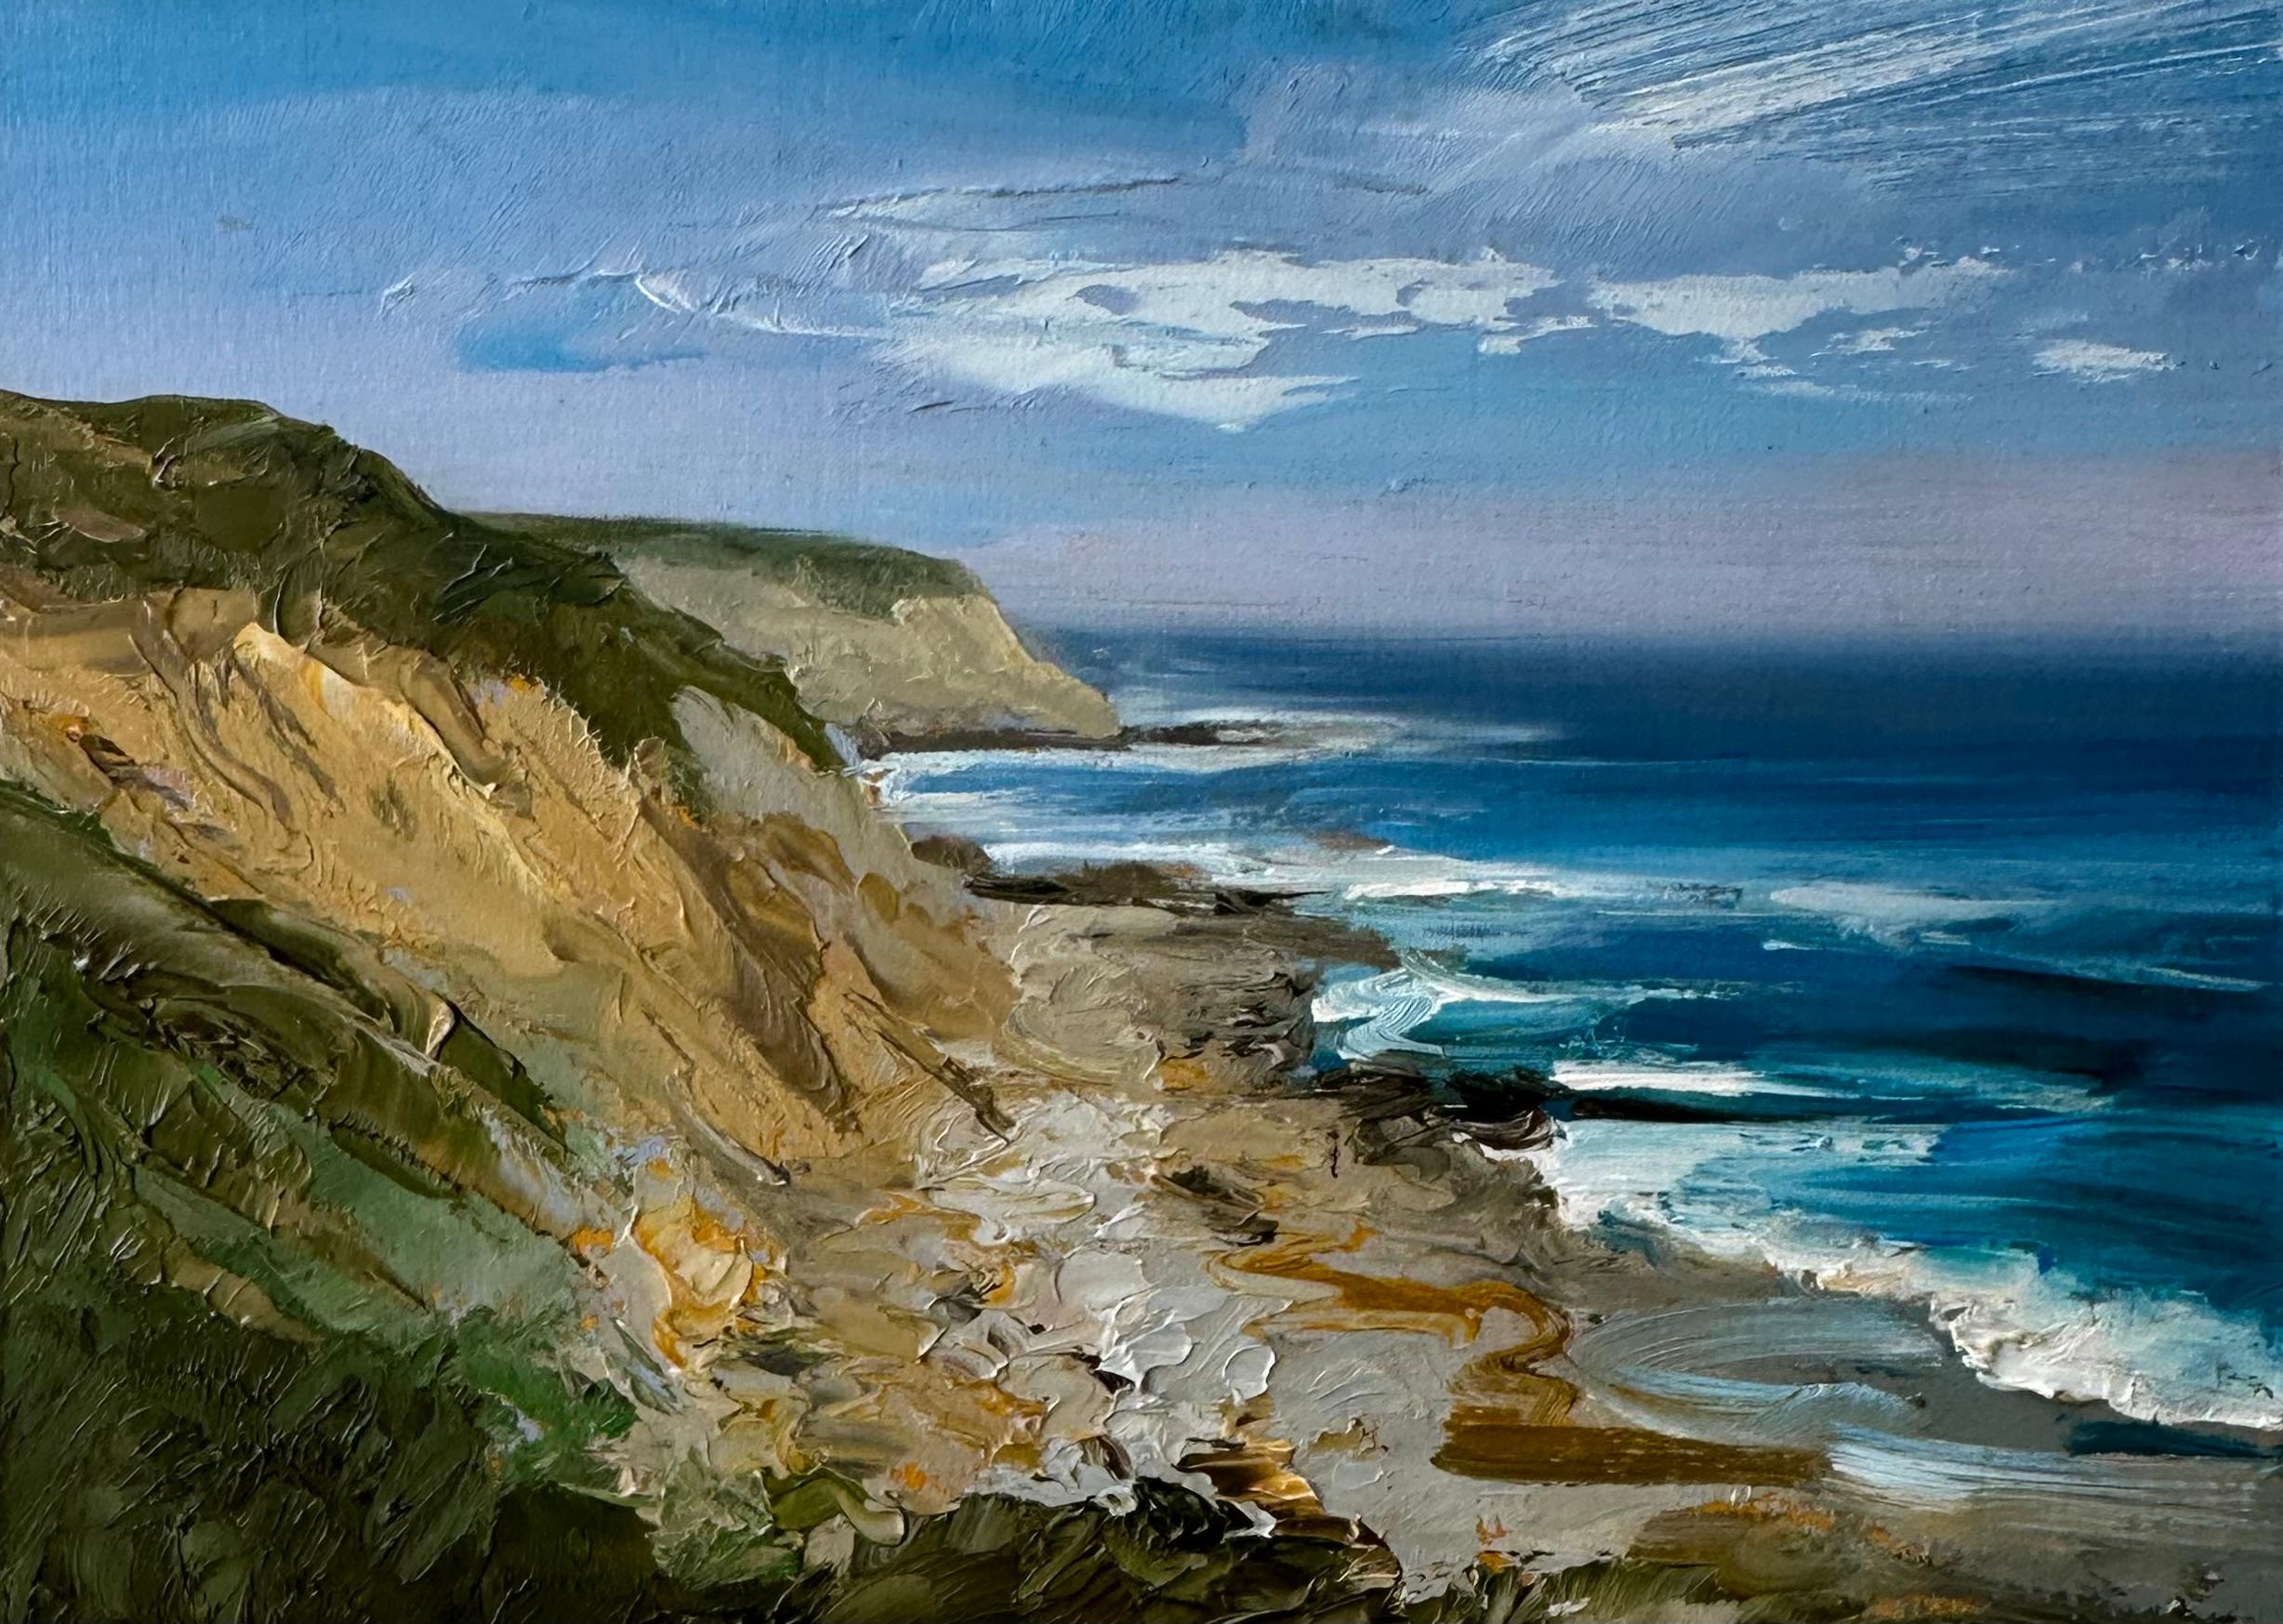 Landscape Painting Whitney Knapp - "These Days", une peinture à l'huile de paysage avec un bord de falaise et un rivage pittoresques.